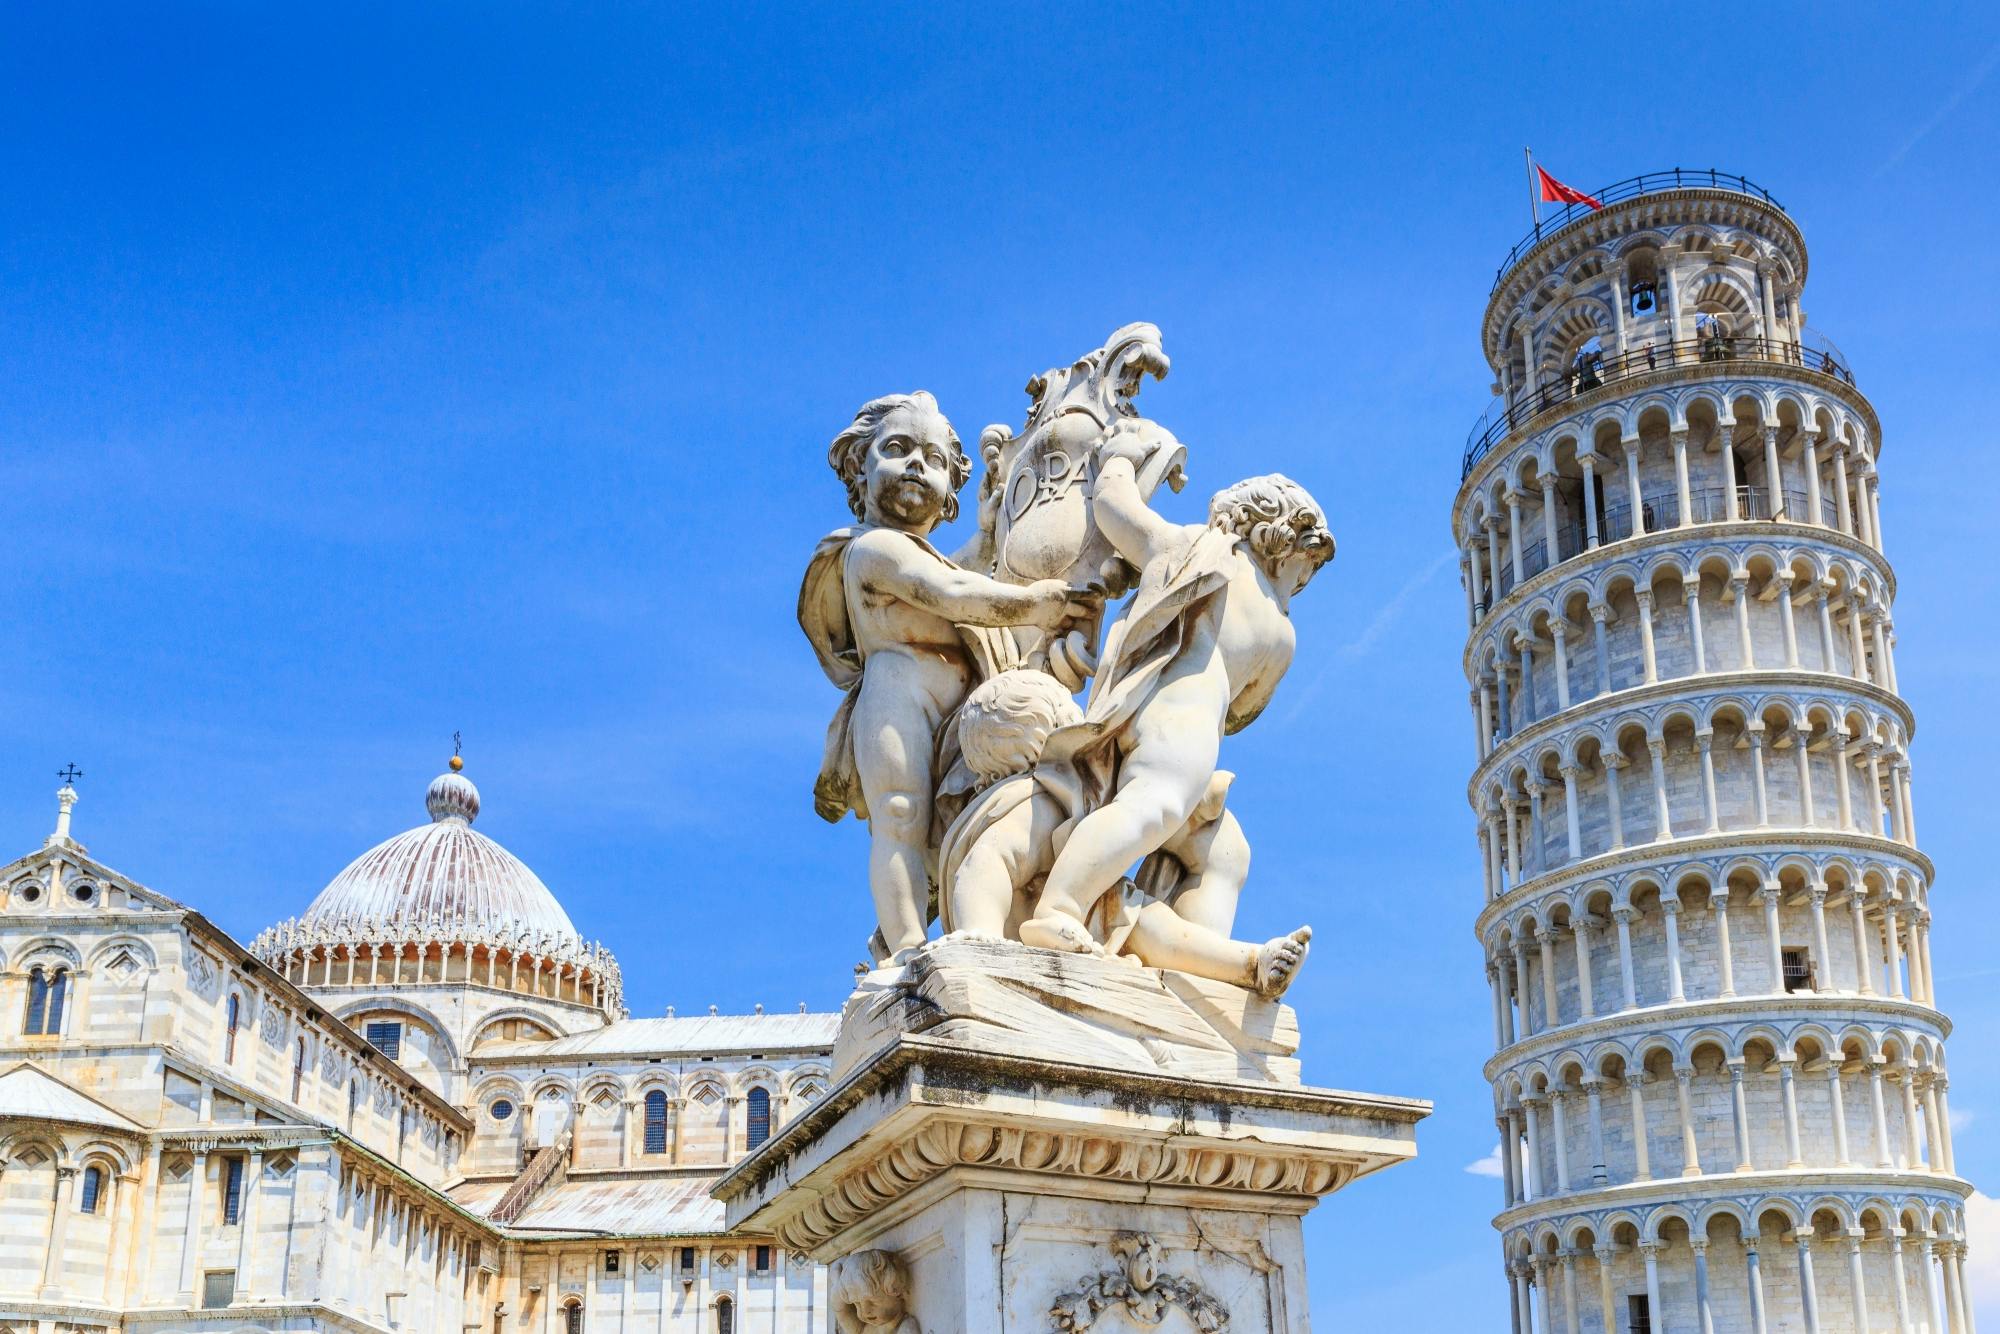 Halbtägige Tour durch Pisa mit Abholung von Montecatini Terme